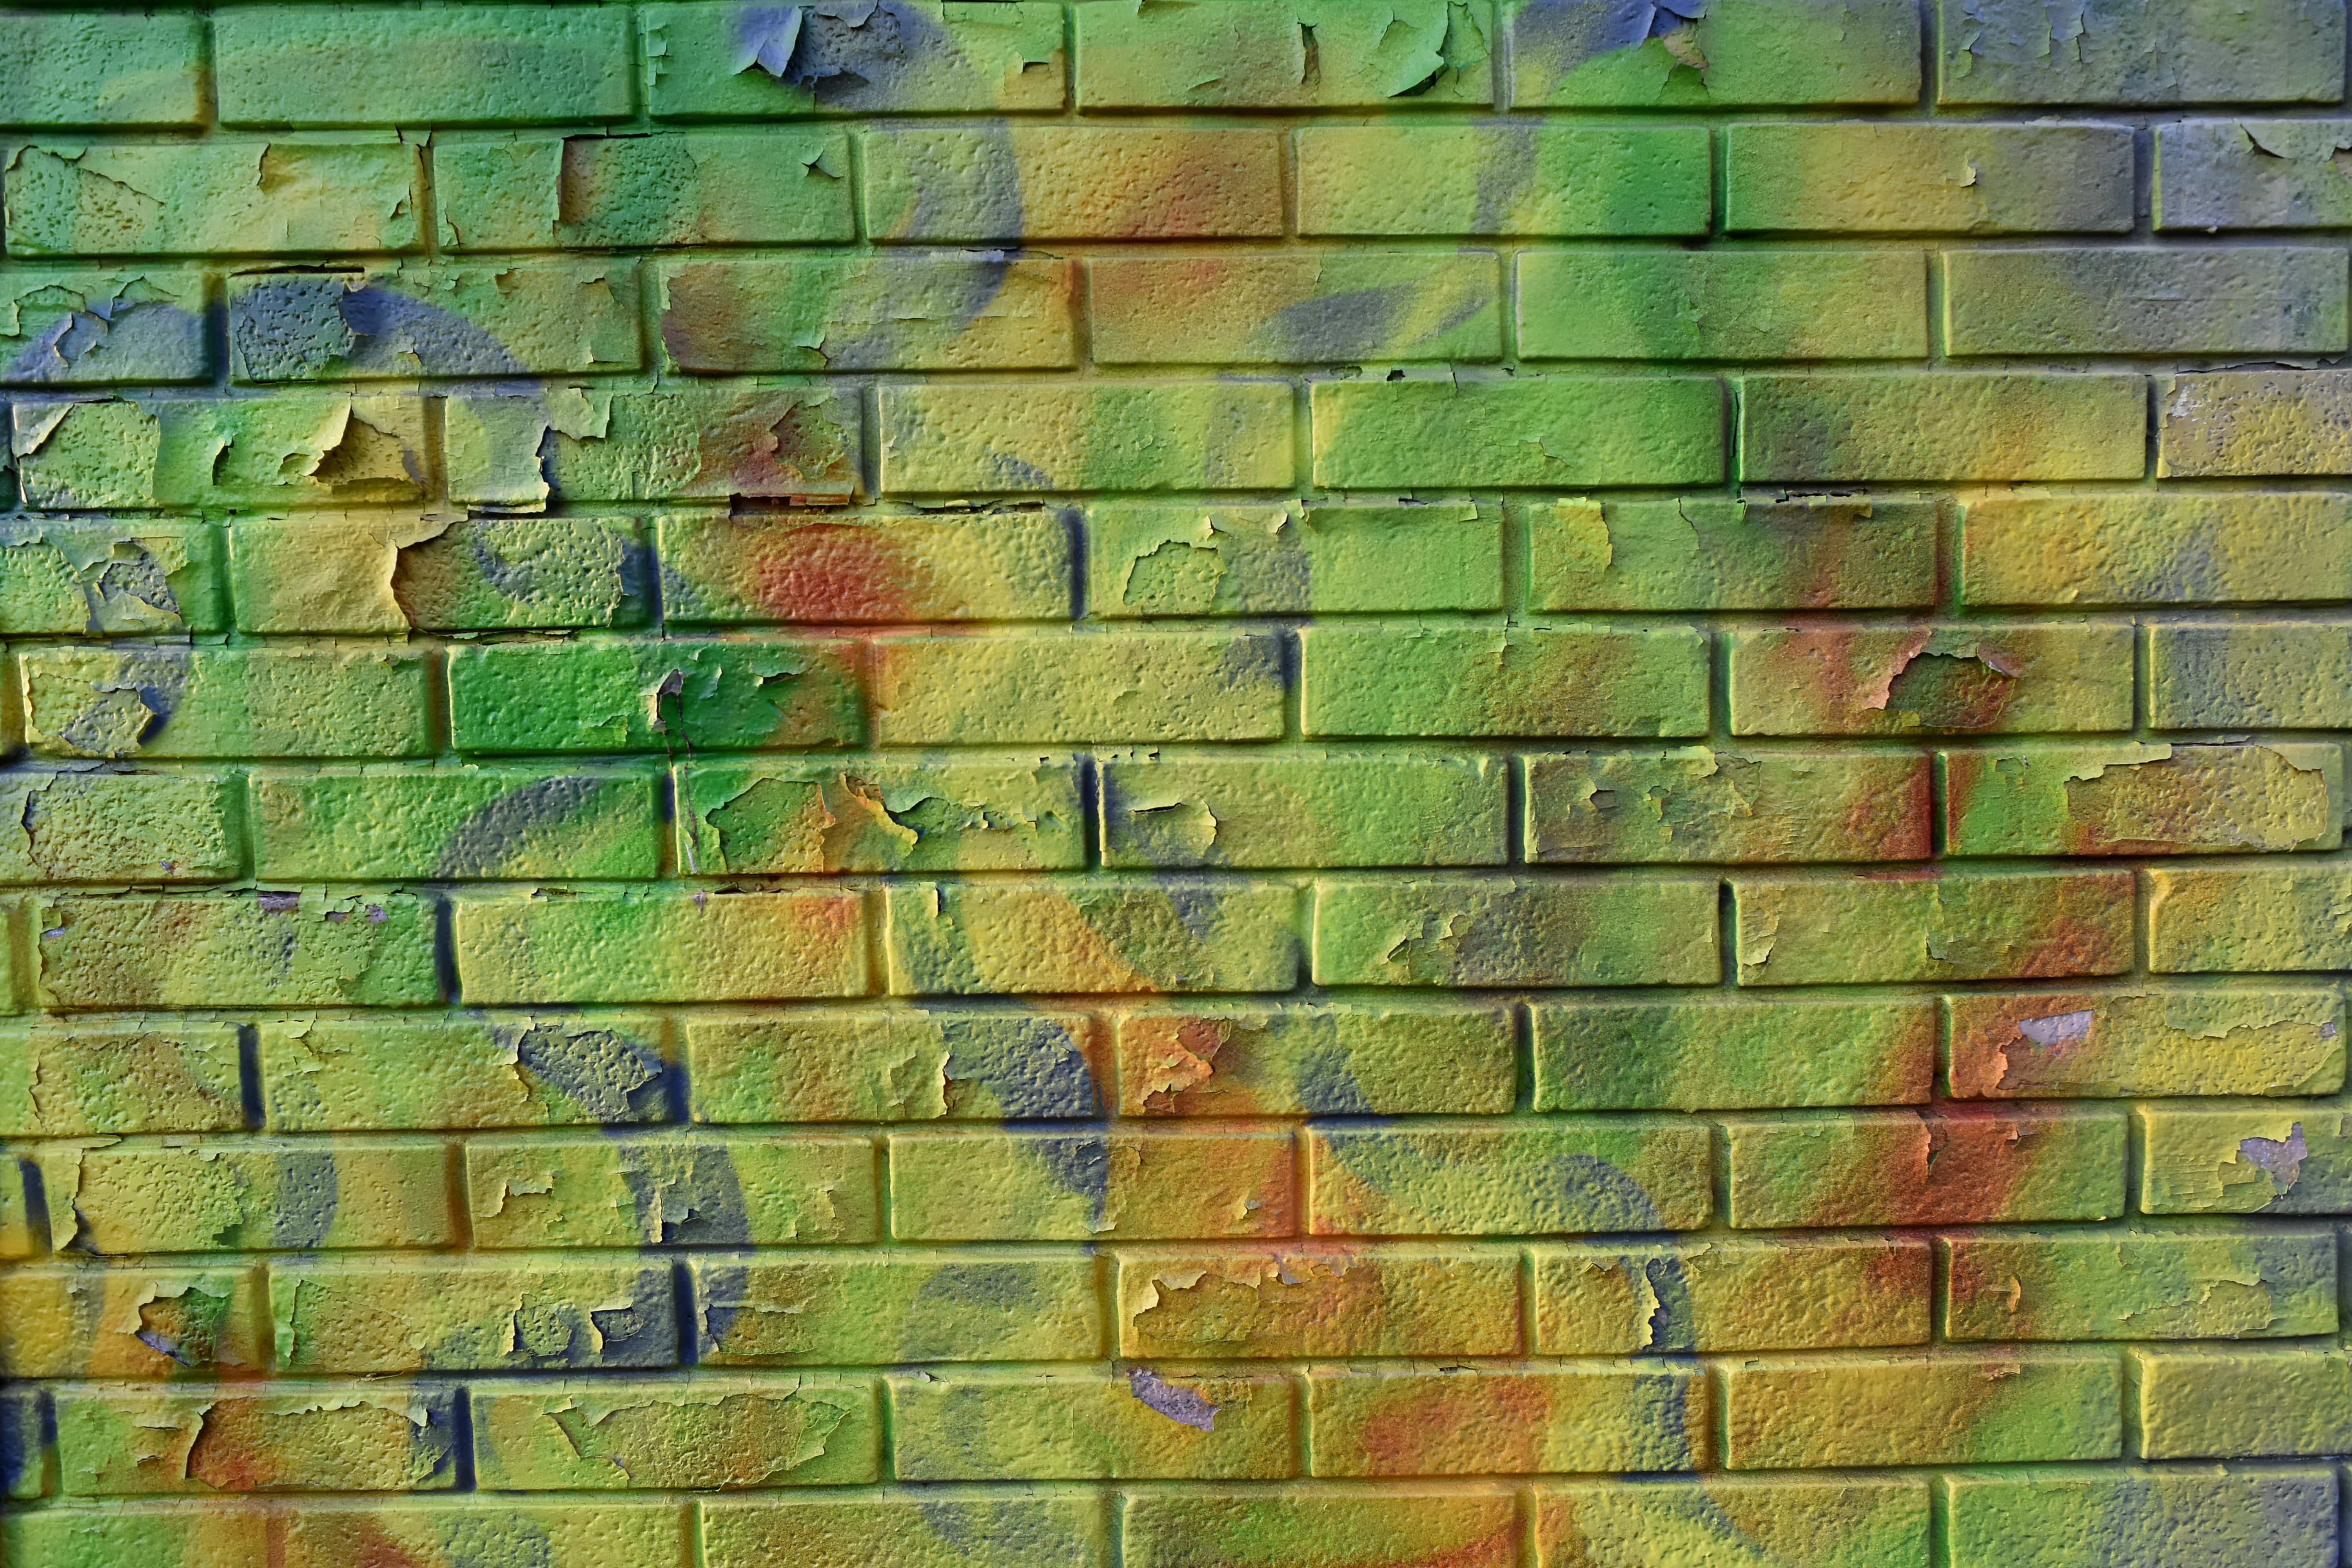 Pin by Atsushi Nakatani on Ảnh chó vui nhộn | Iphone lockscreen wallpaper,  Galaxy phone wallp… | Brick wallpaper iphone, Kaws wallpaper, Iphone  lockscreen wallpaper